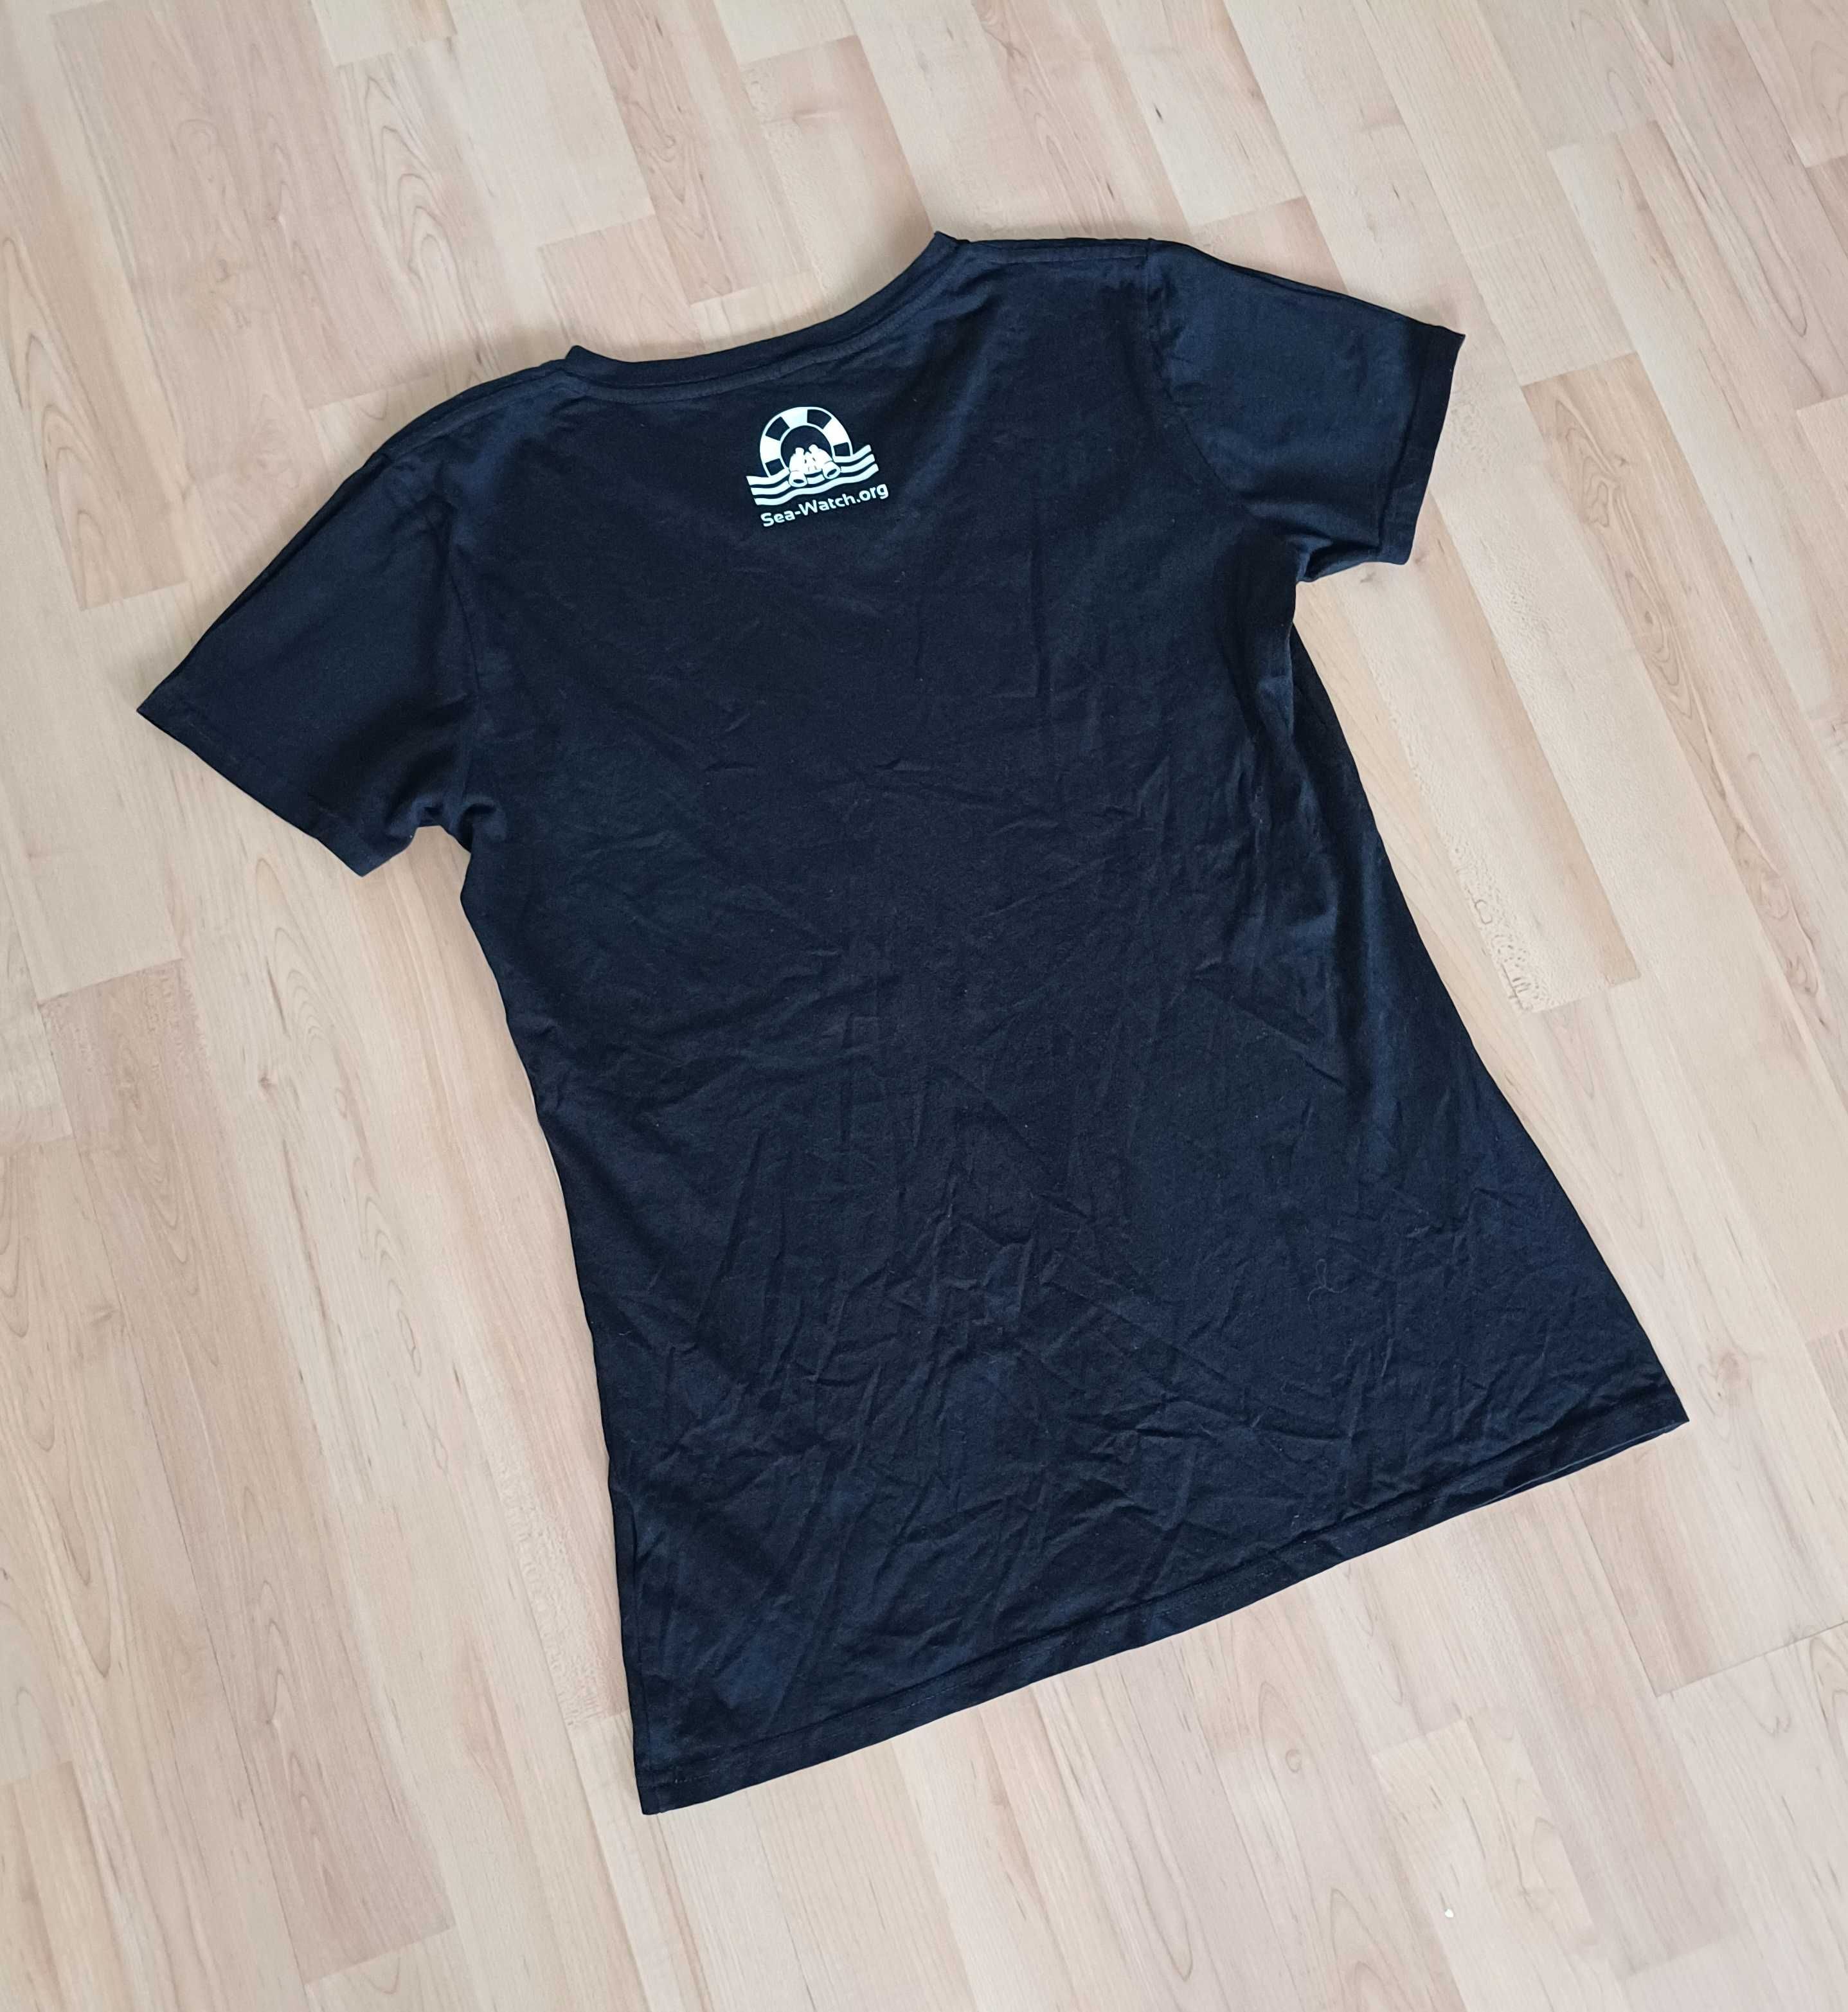 T-shirt damski męski czarny na krótki rękawek nadrukiem XL/42 bawełna